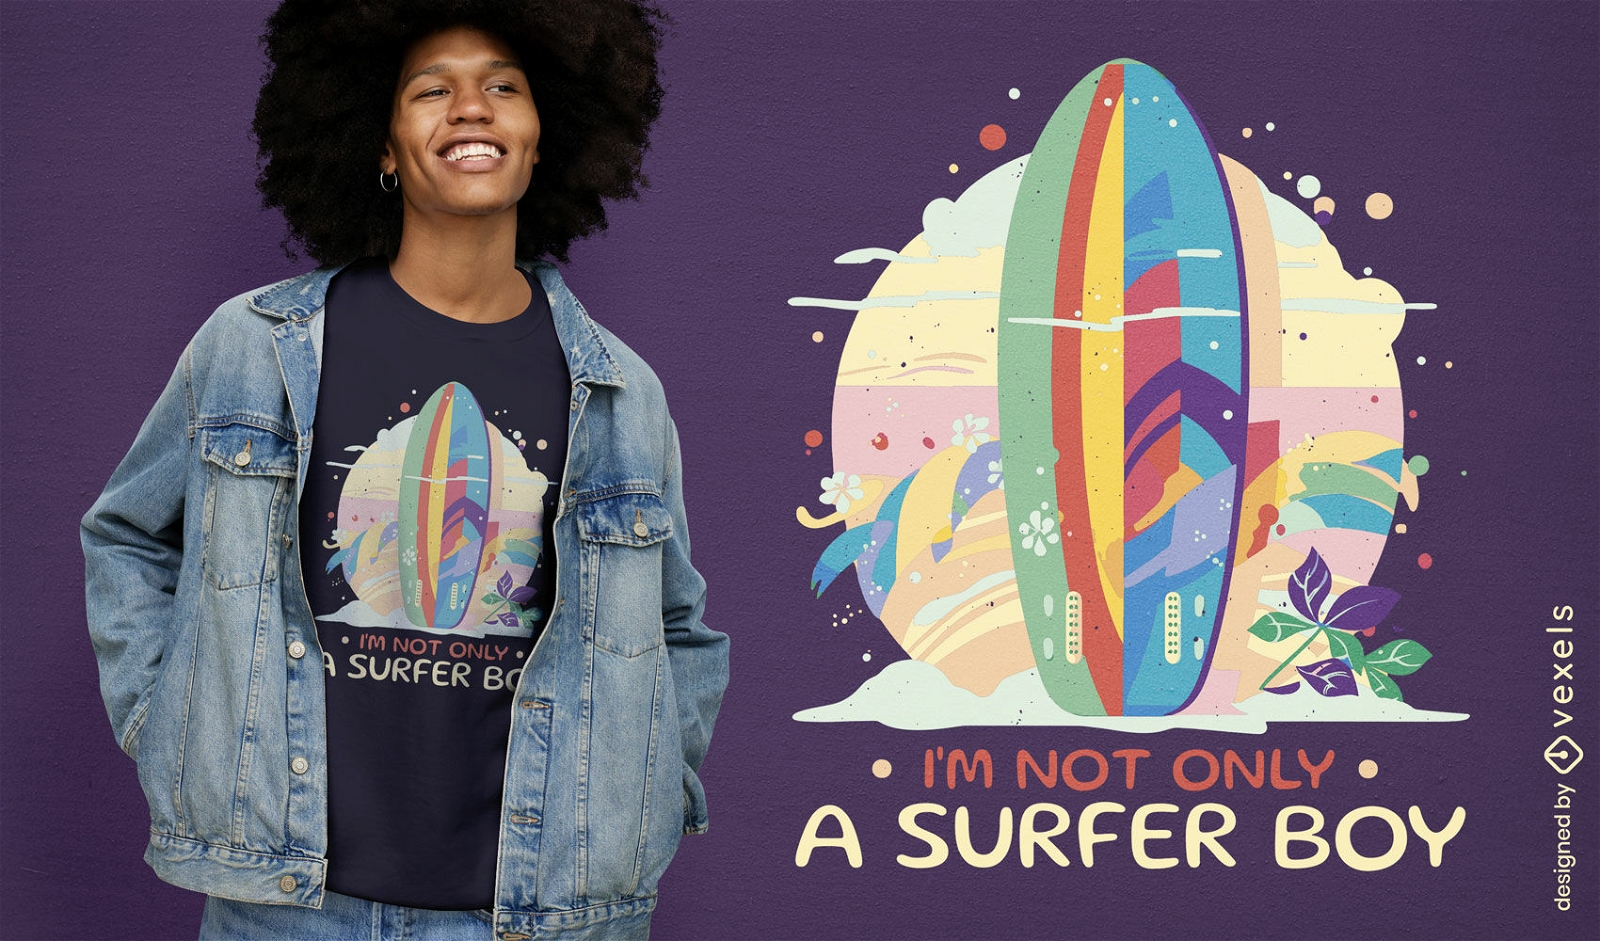 No solo un dise?o de camiseta de chico surfista.